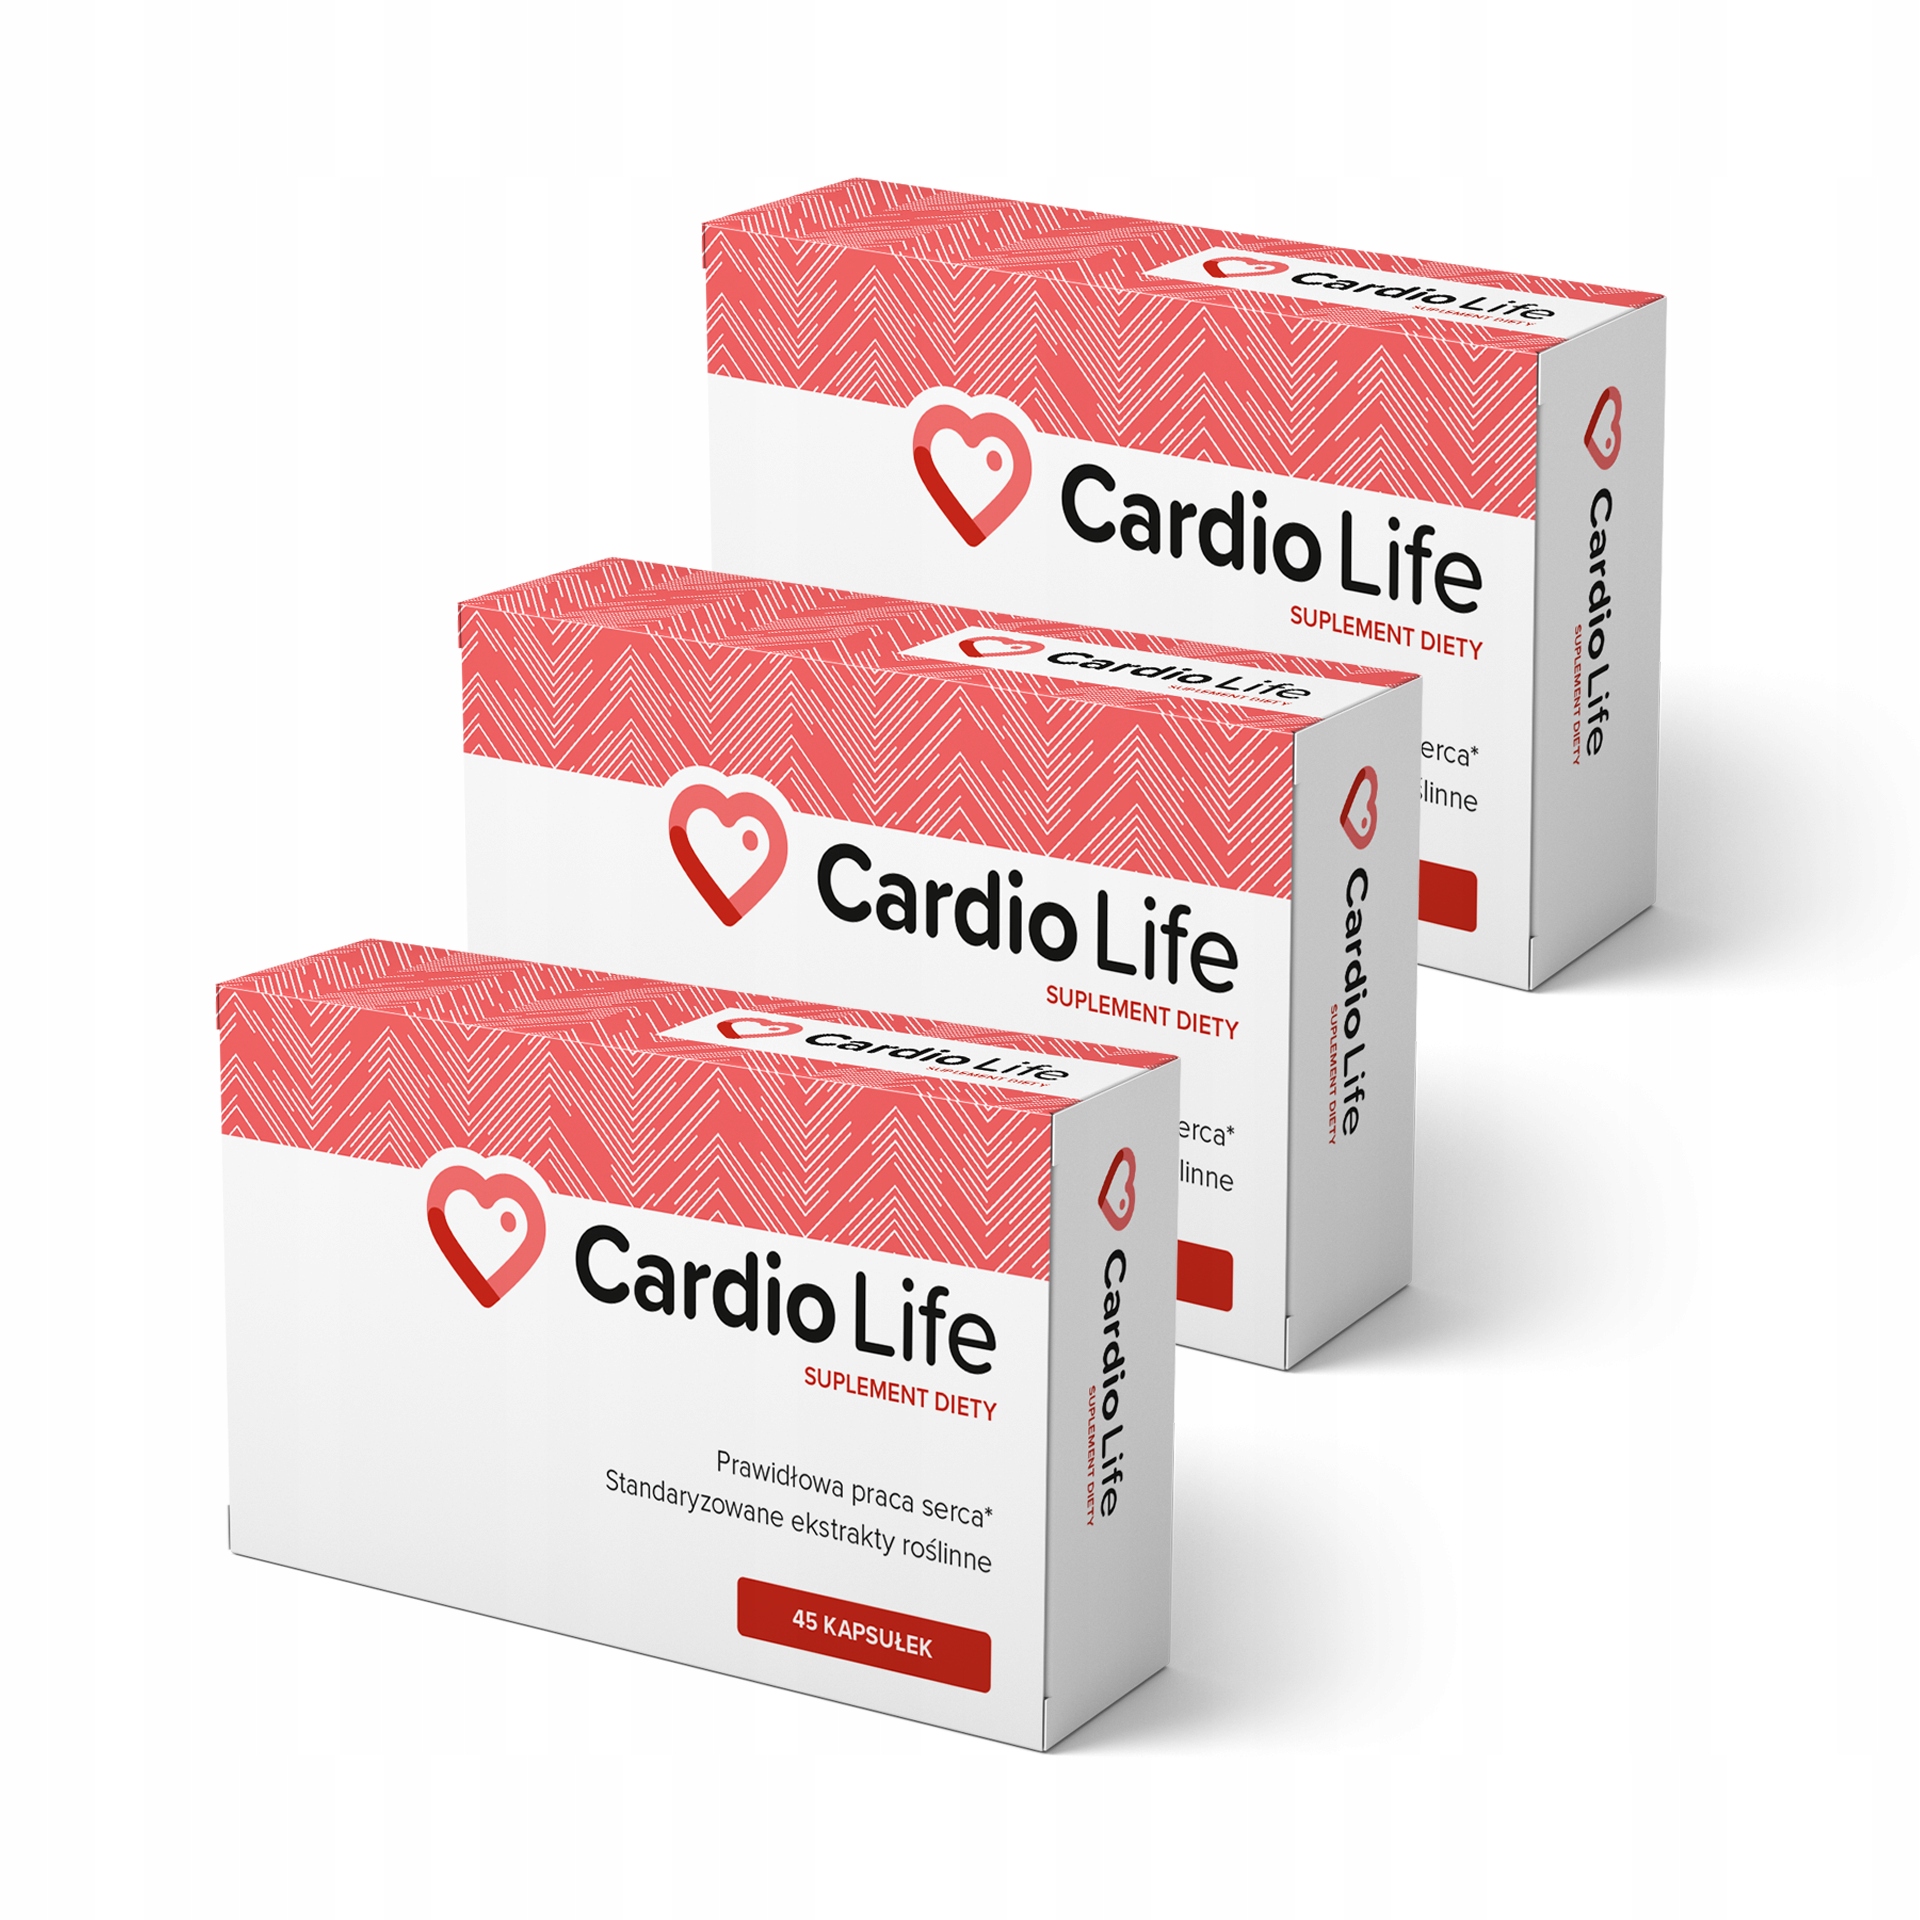 Cardio Life - erfahrungen - Stiftung Warentest - bewertung - test